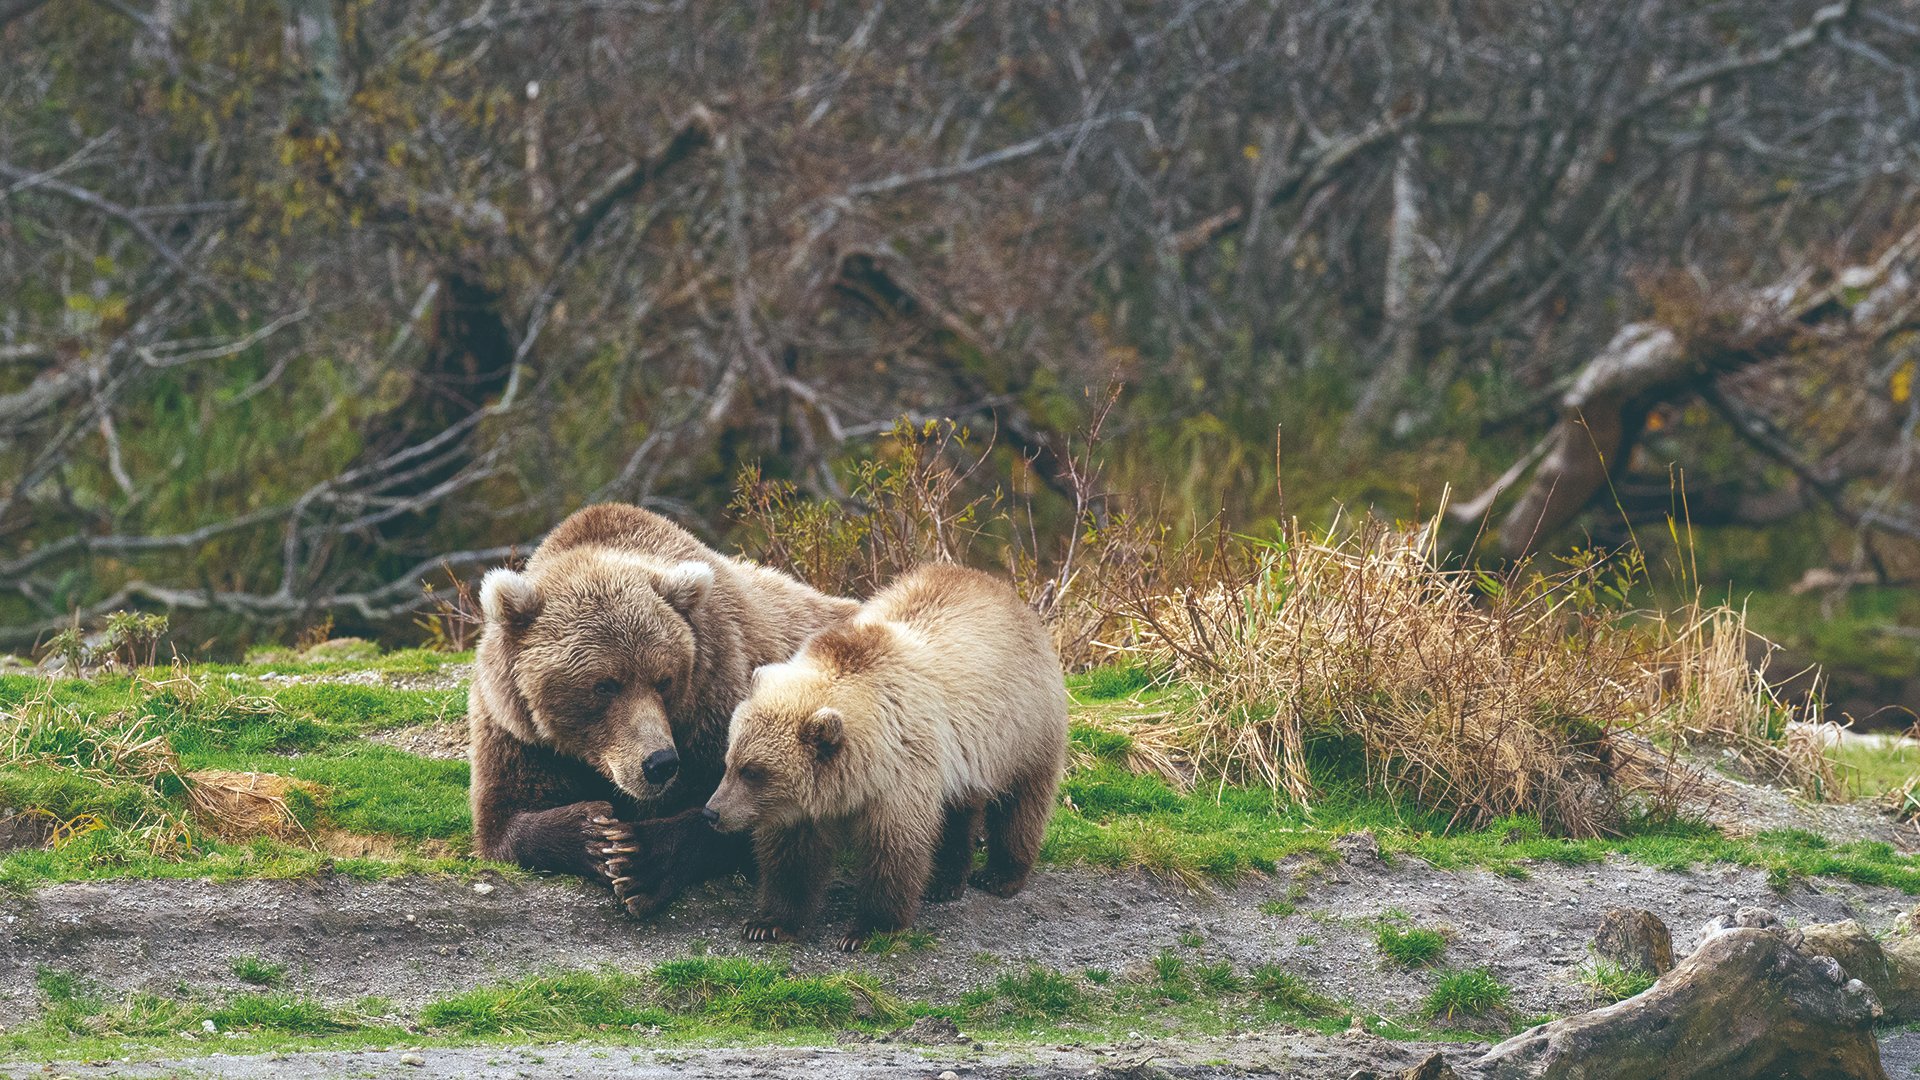 ネイチャーフォトに明け暮れて60年。野生動物写真家が語る、クマの魅力